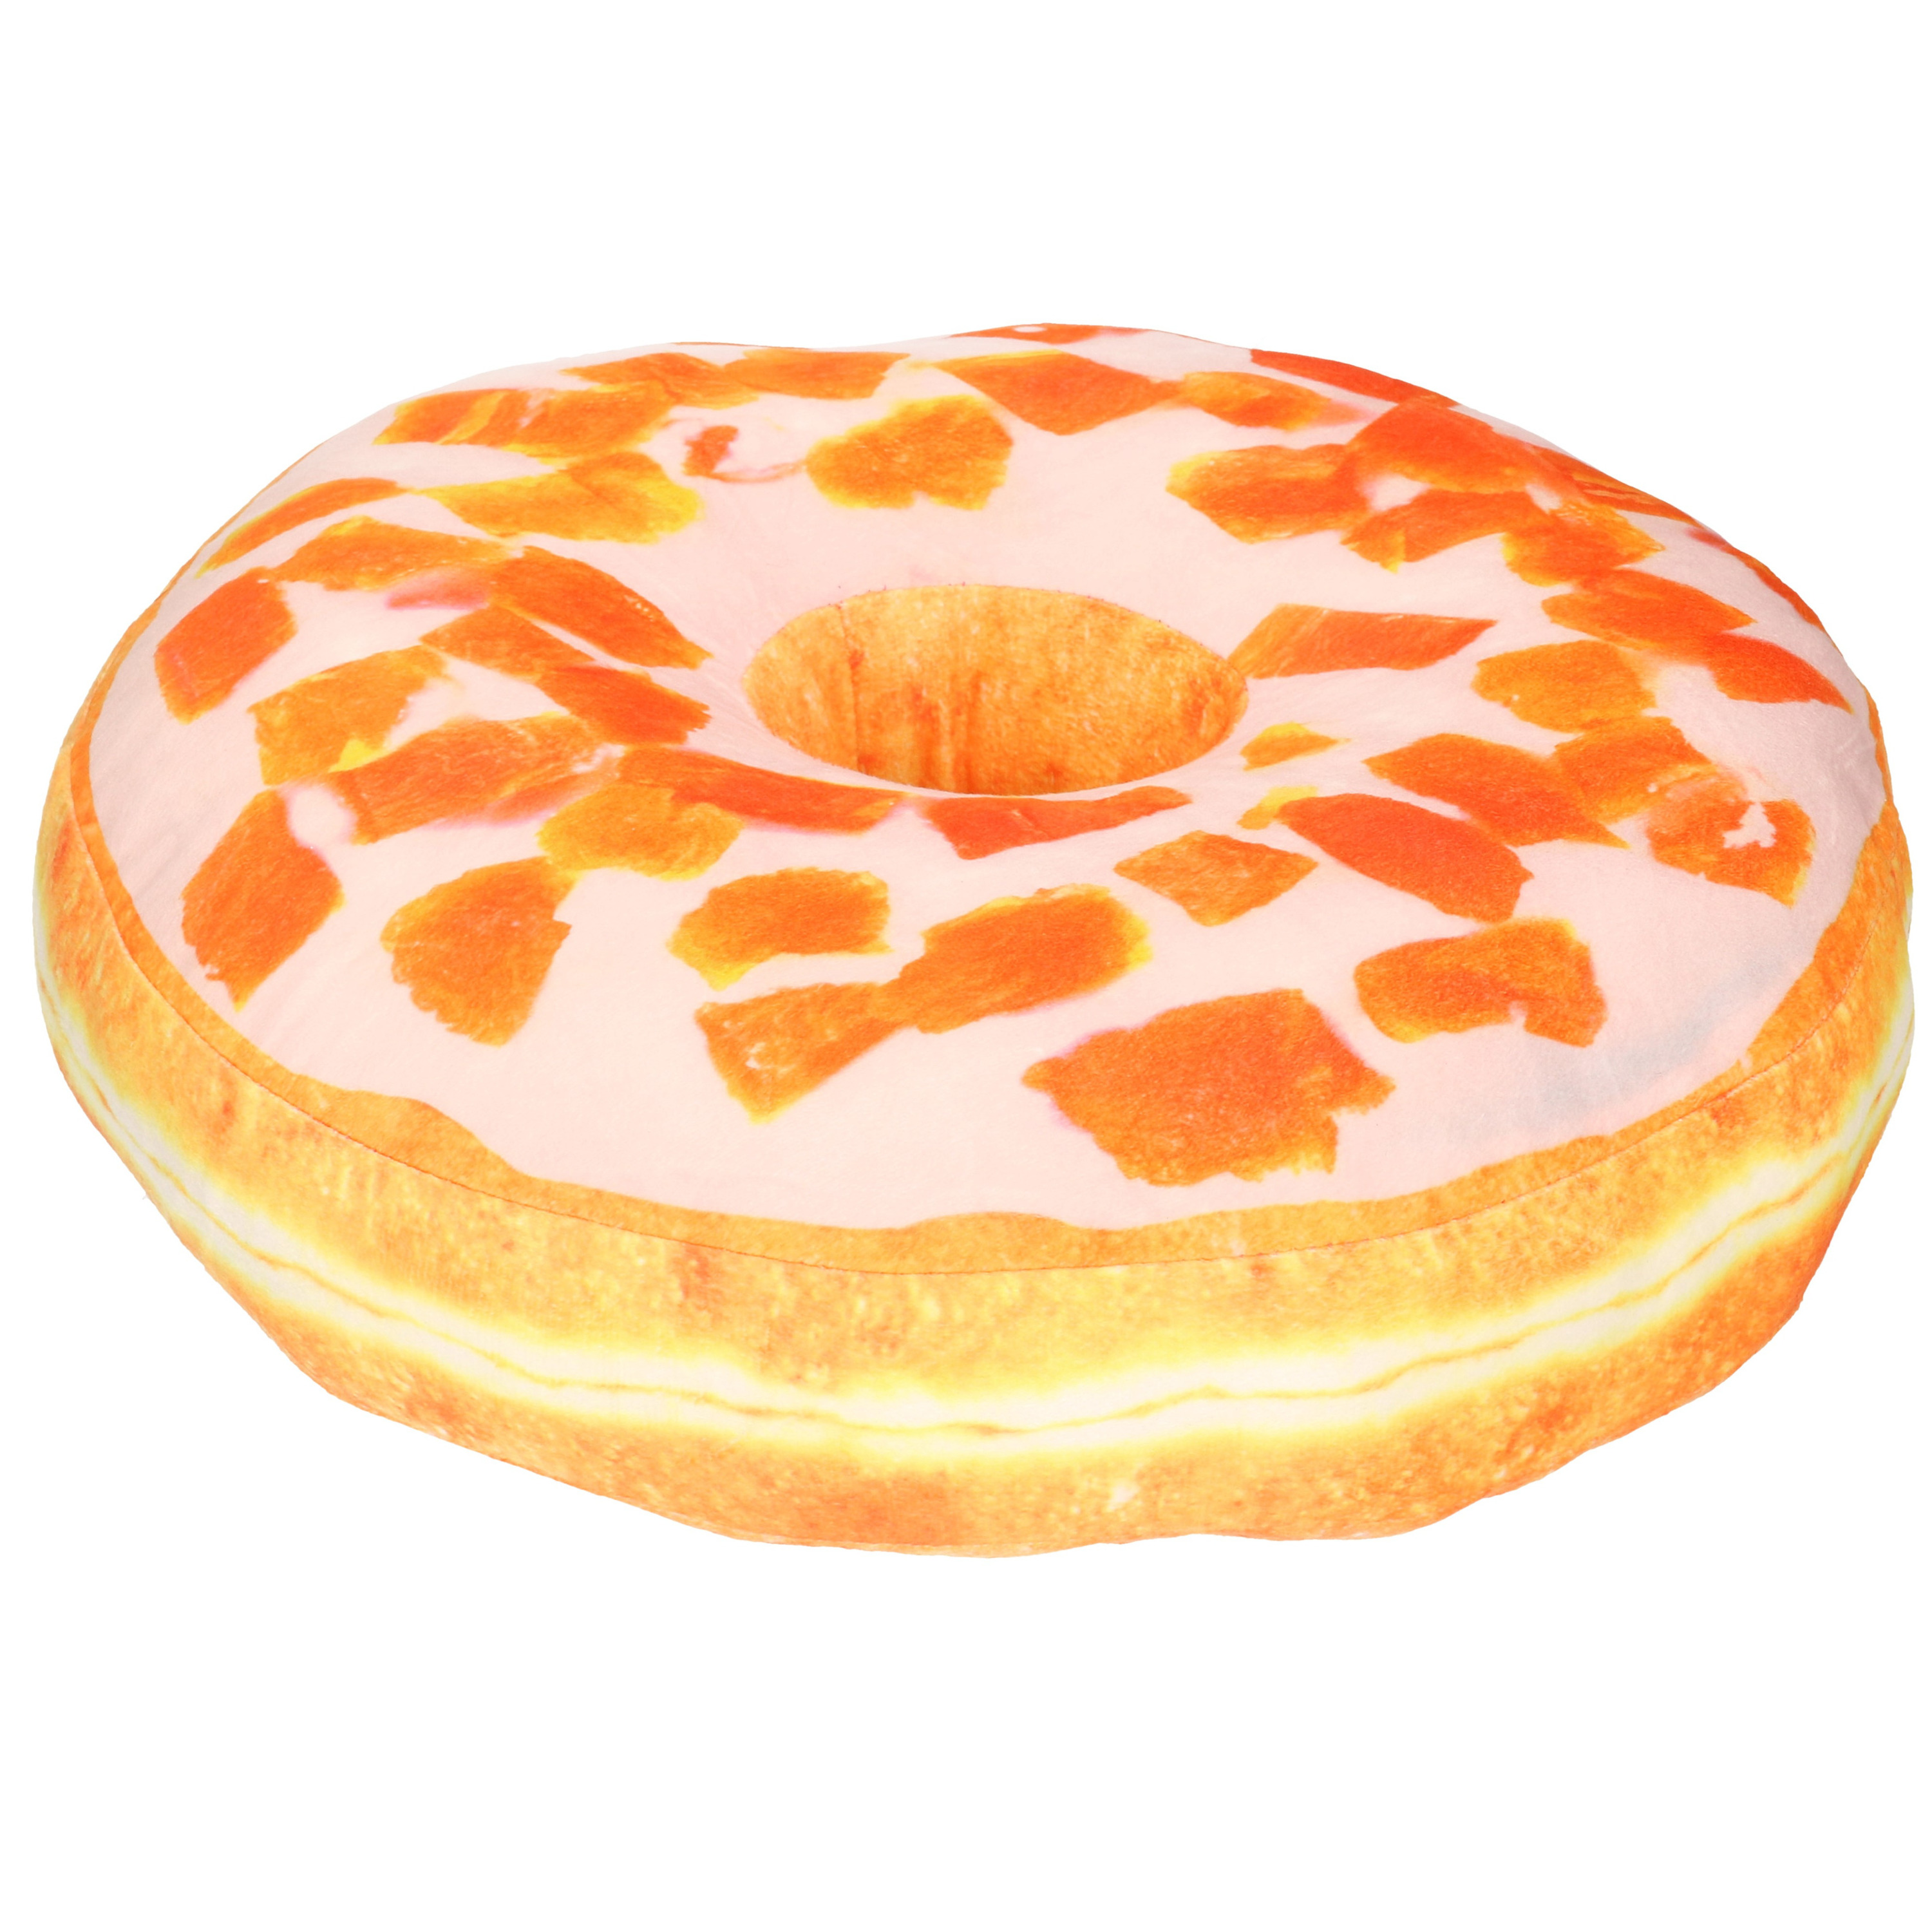 Donut sierkussen oranje met glazuur en mandarijnen 40 cm